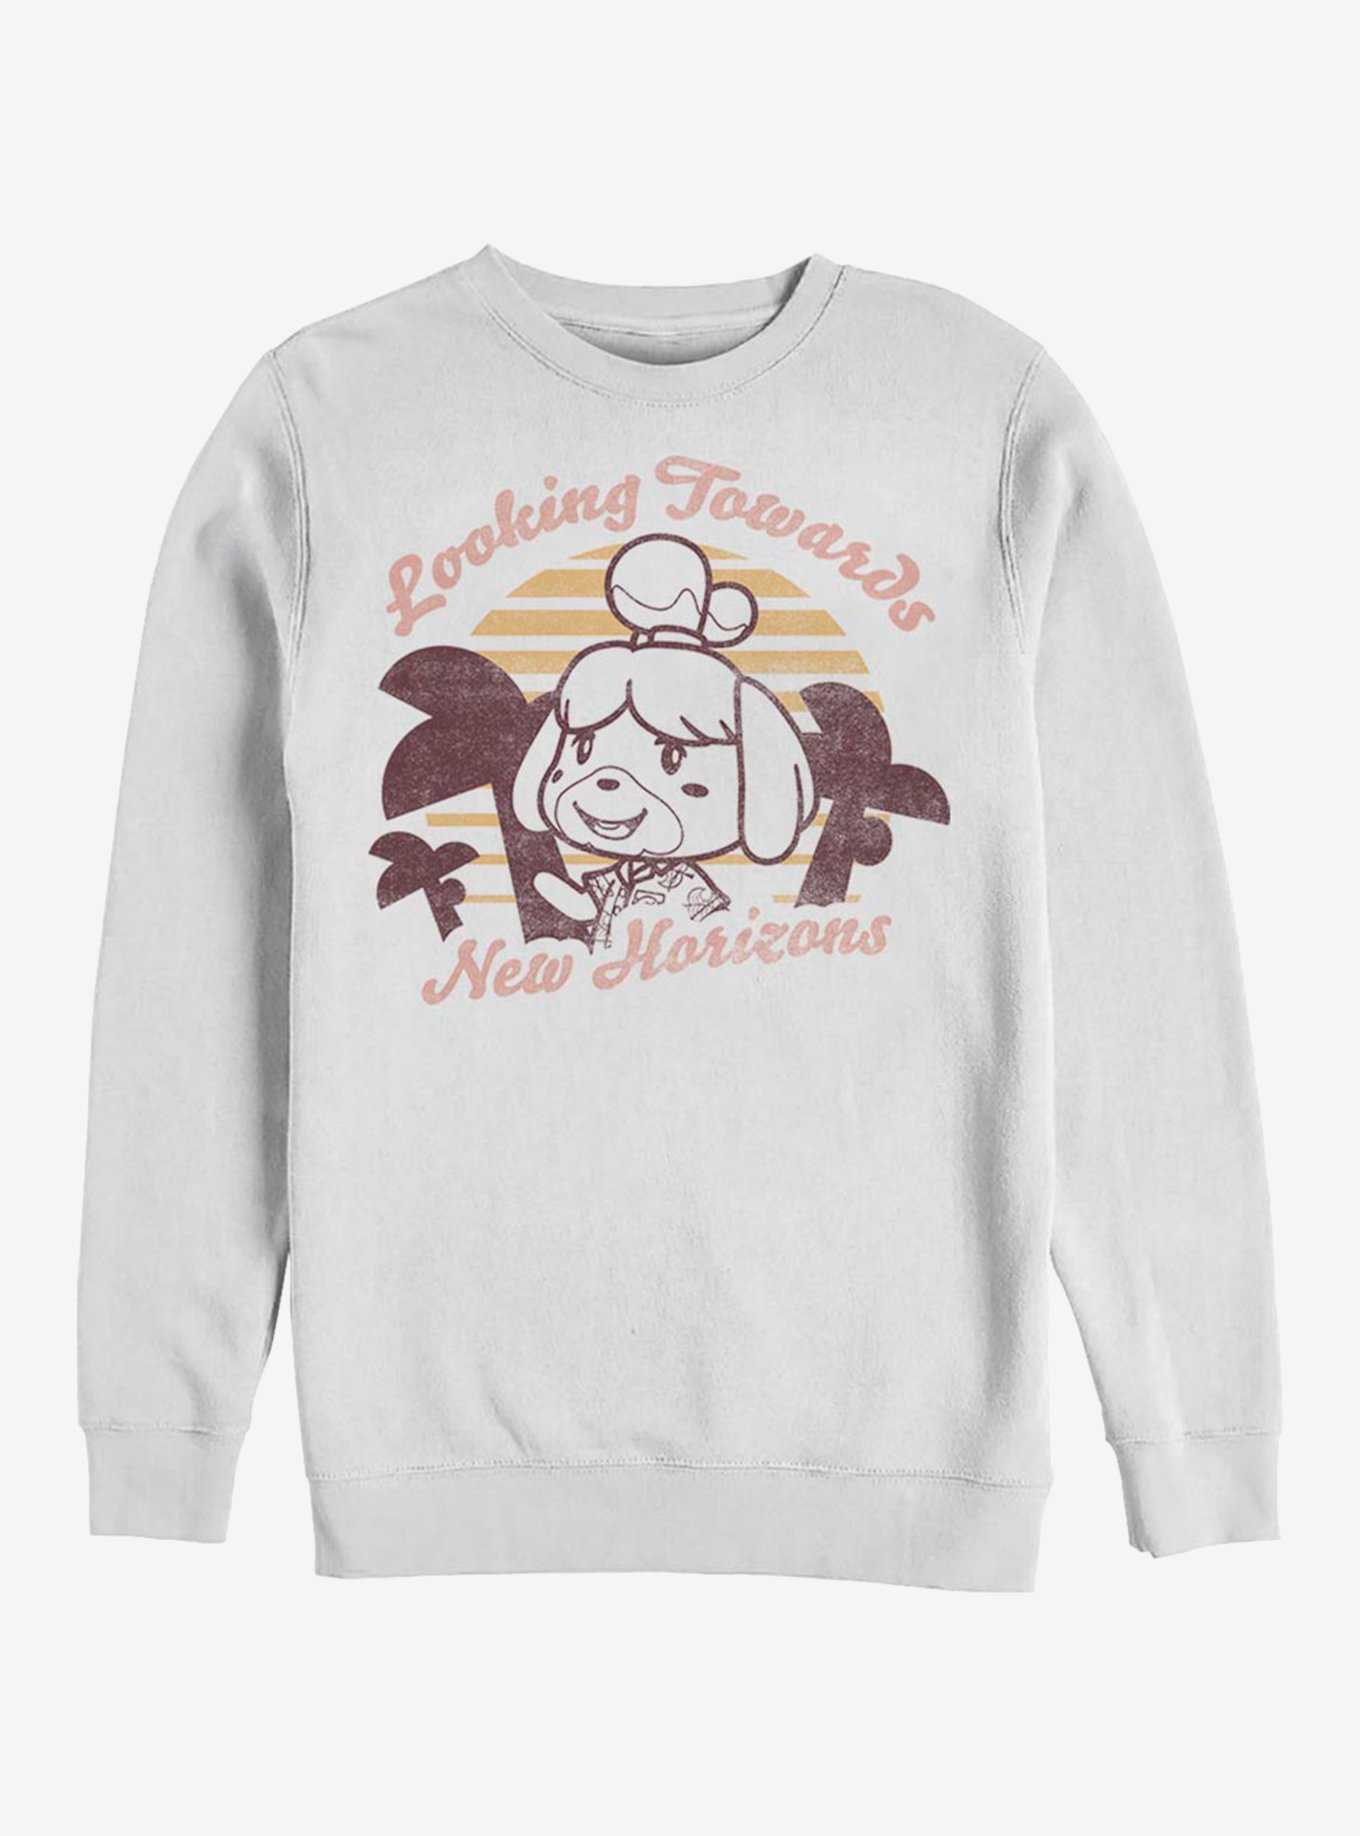 Animal Crossing New Horizons Sweatshirt, WHITE, hi-res